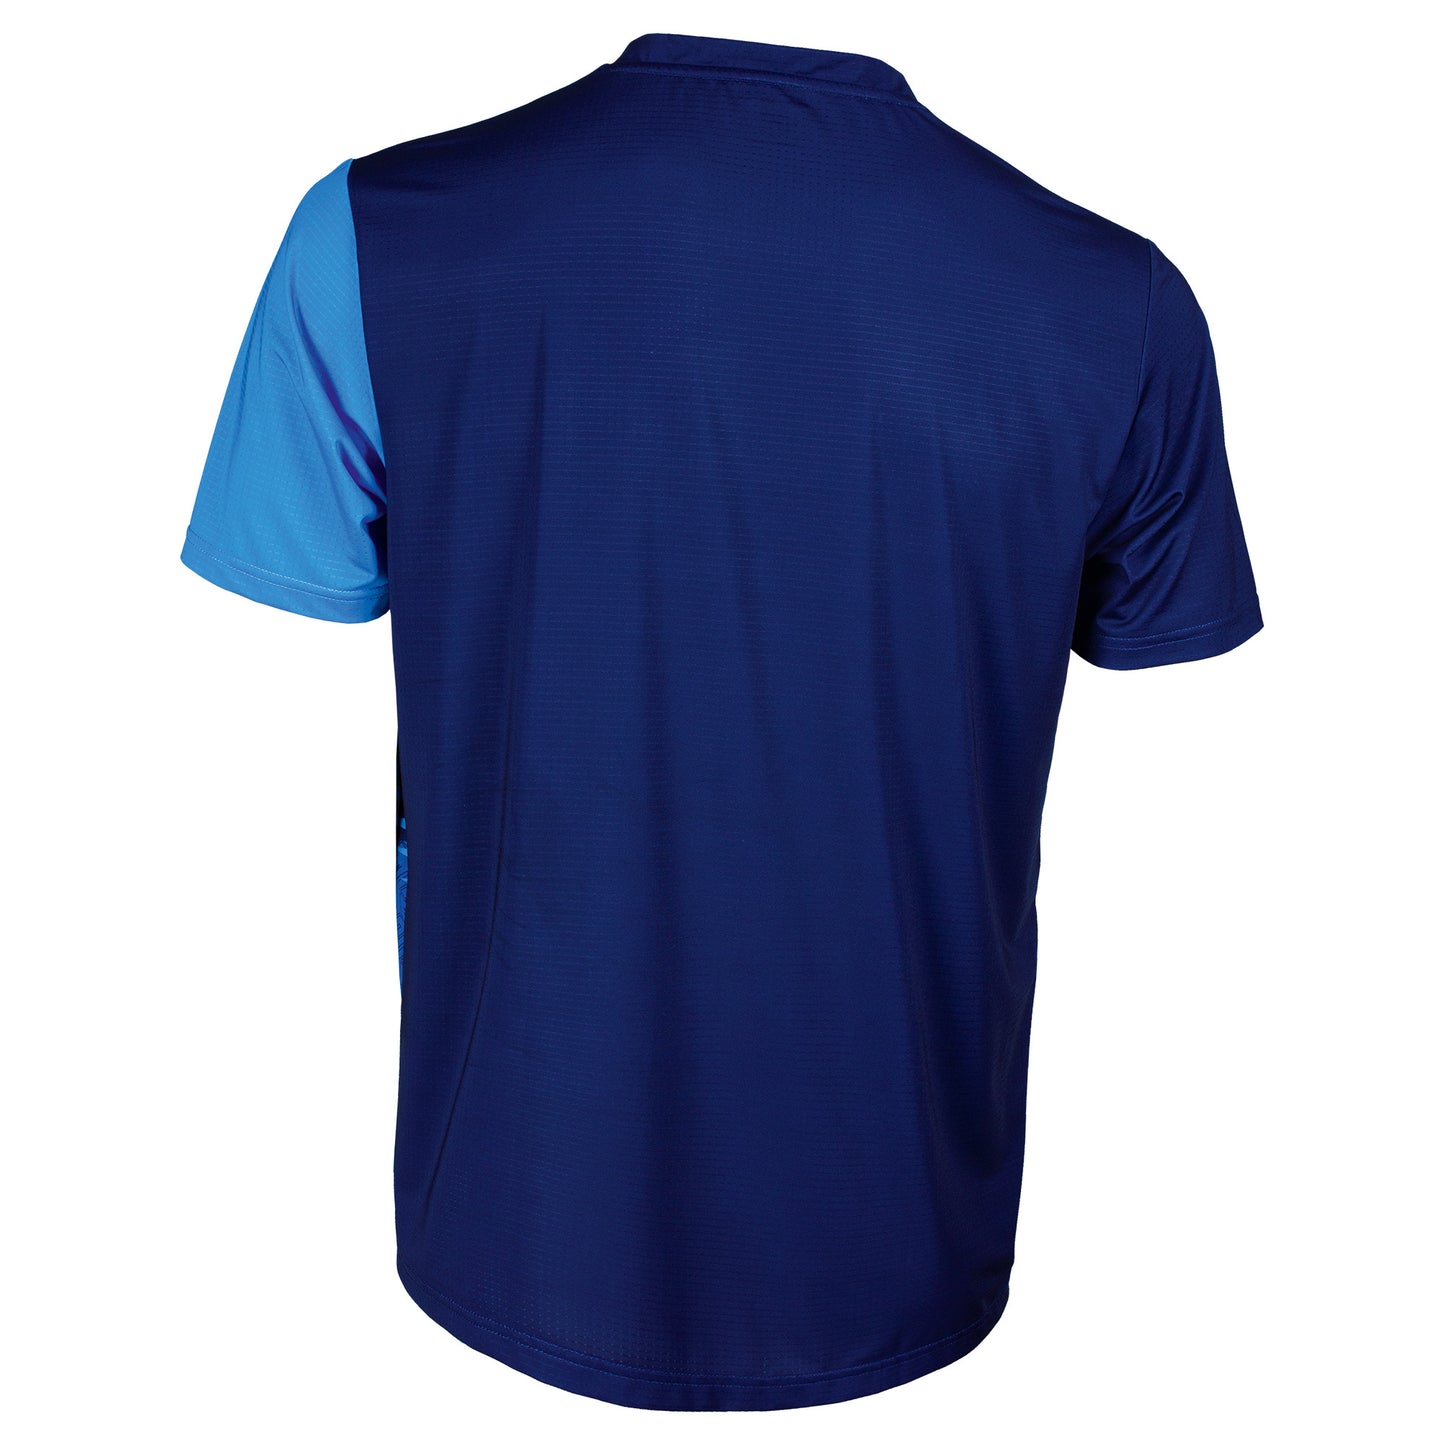 Tibhar TT-Shirt Azur Blue - Navy Blue